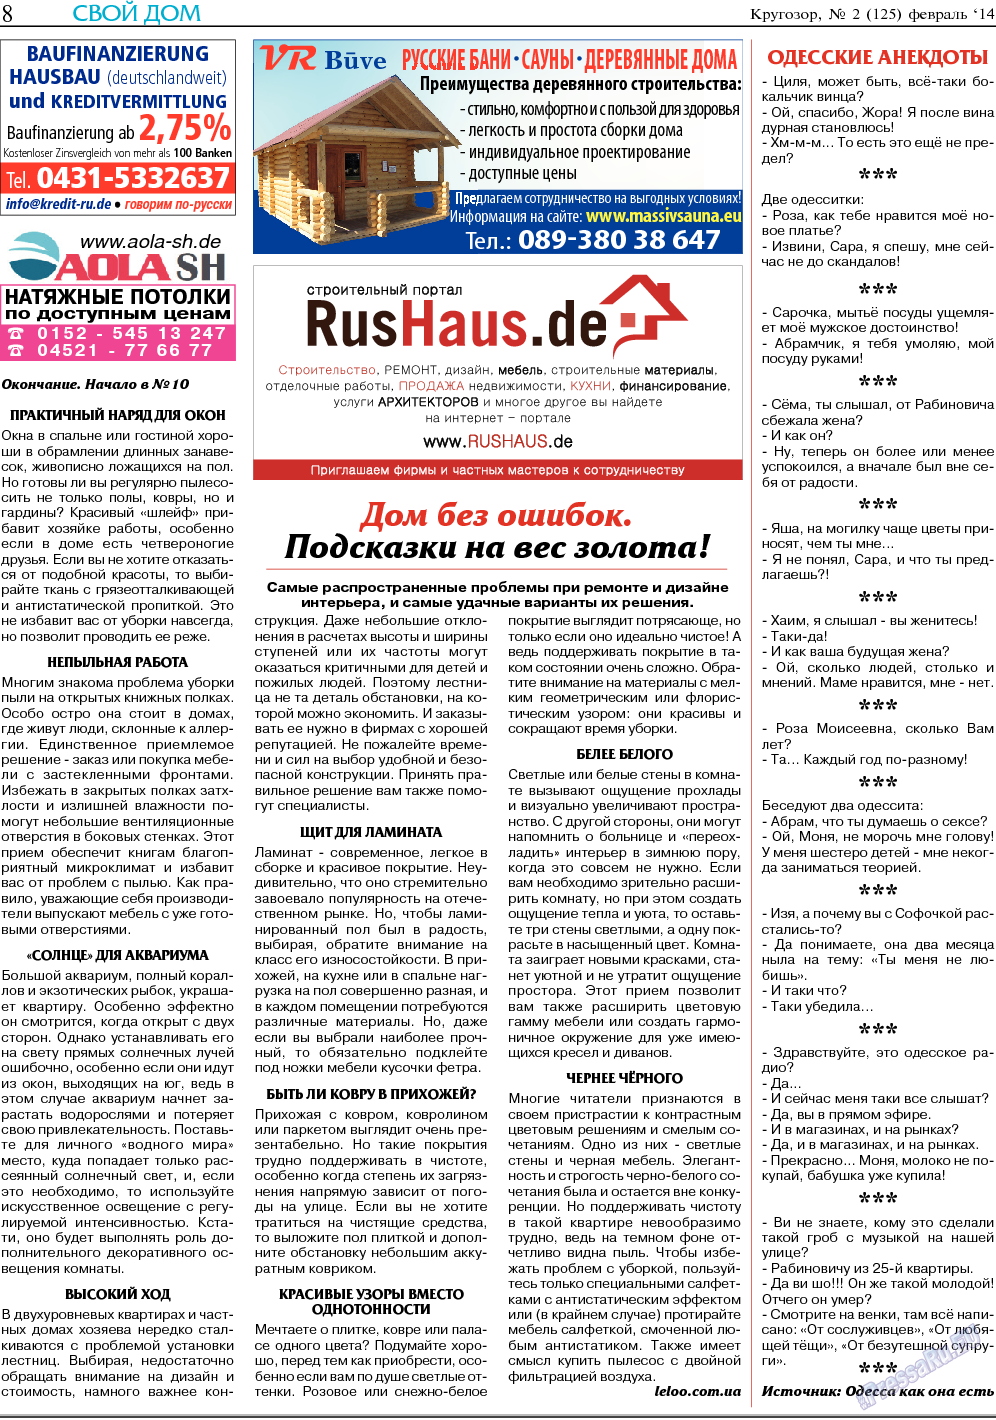 Кругозор, газета. 2014 №2 стр.8